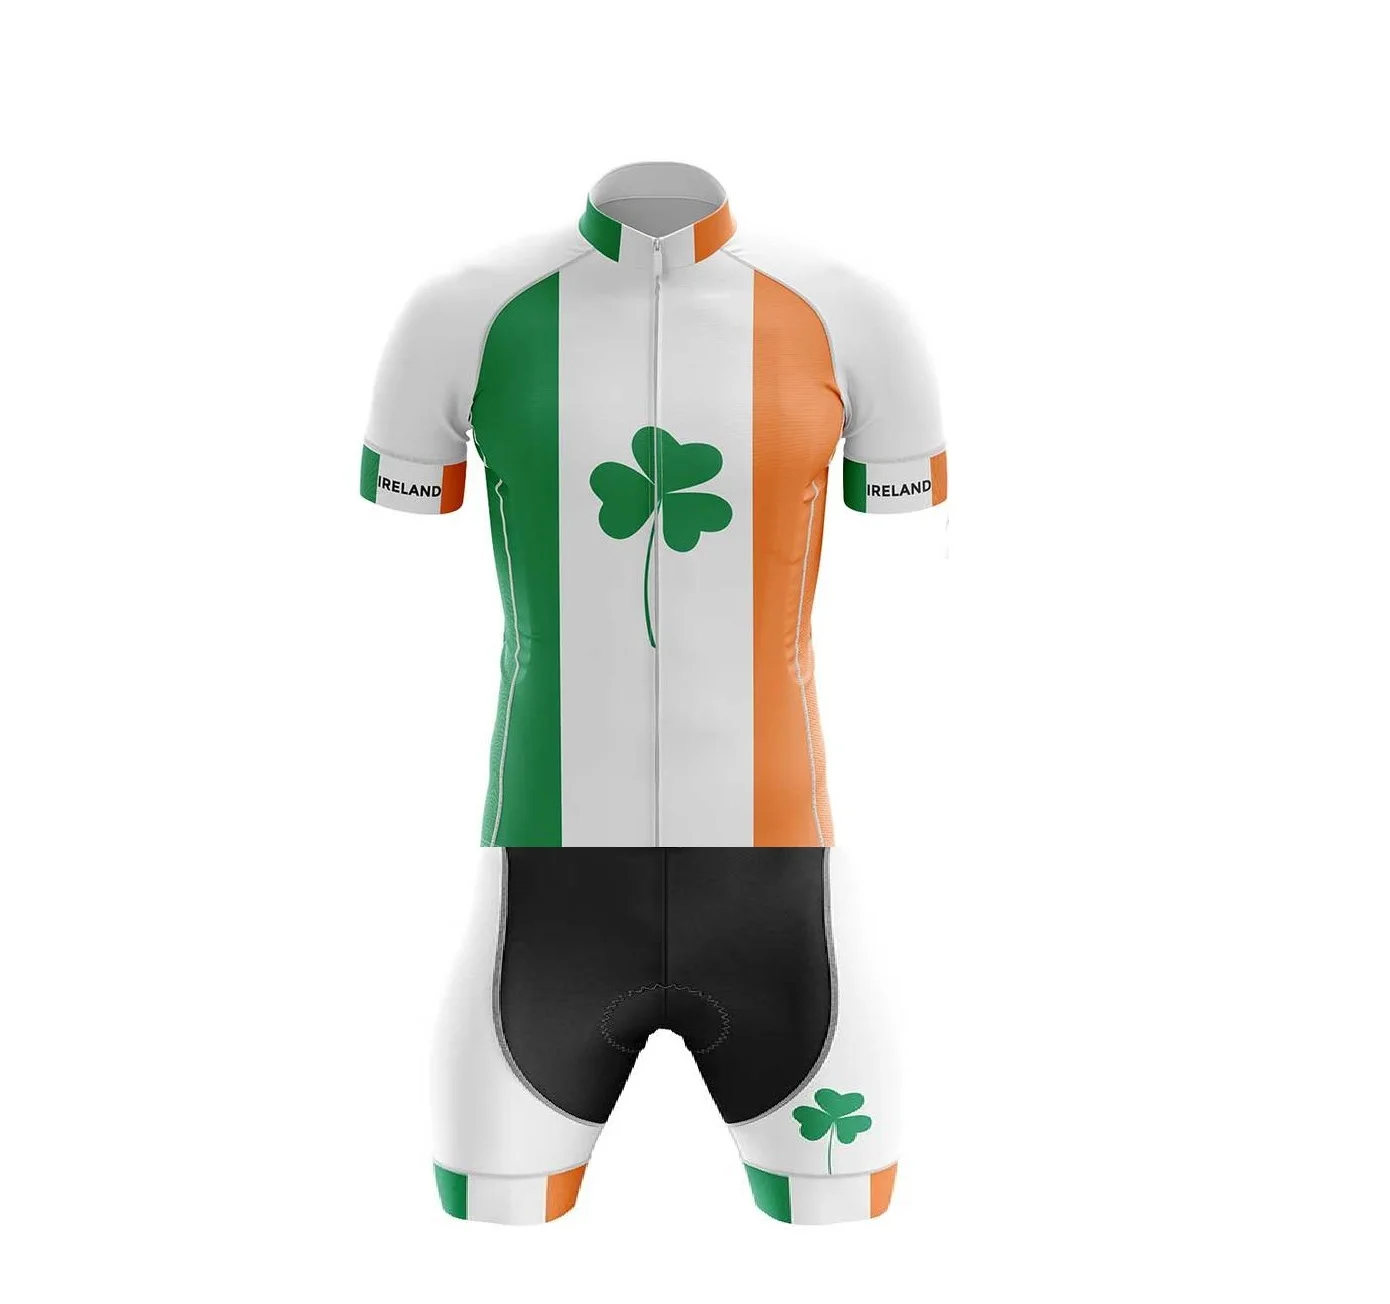 

Мужская одежда для велоспорта с лазерной резкой, одежда для велоспорта, Джерси, боди, костюм, костюм с лазерной резкой, размер сборной Ирландии